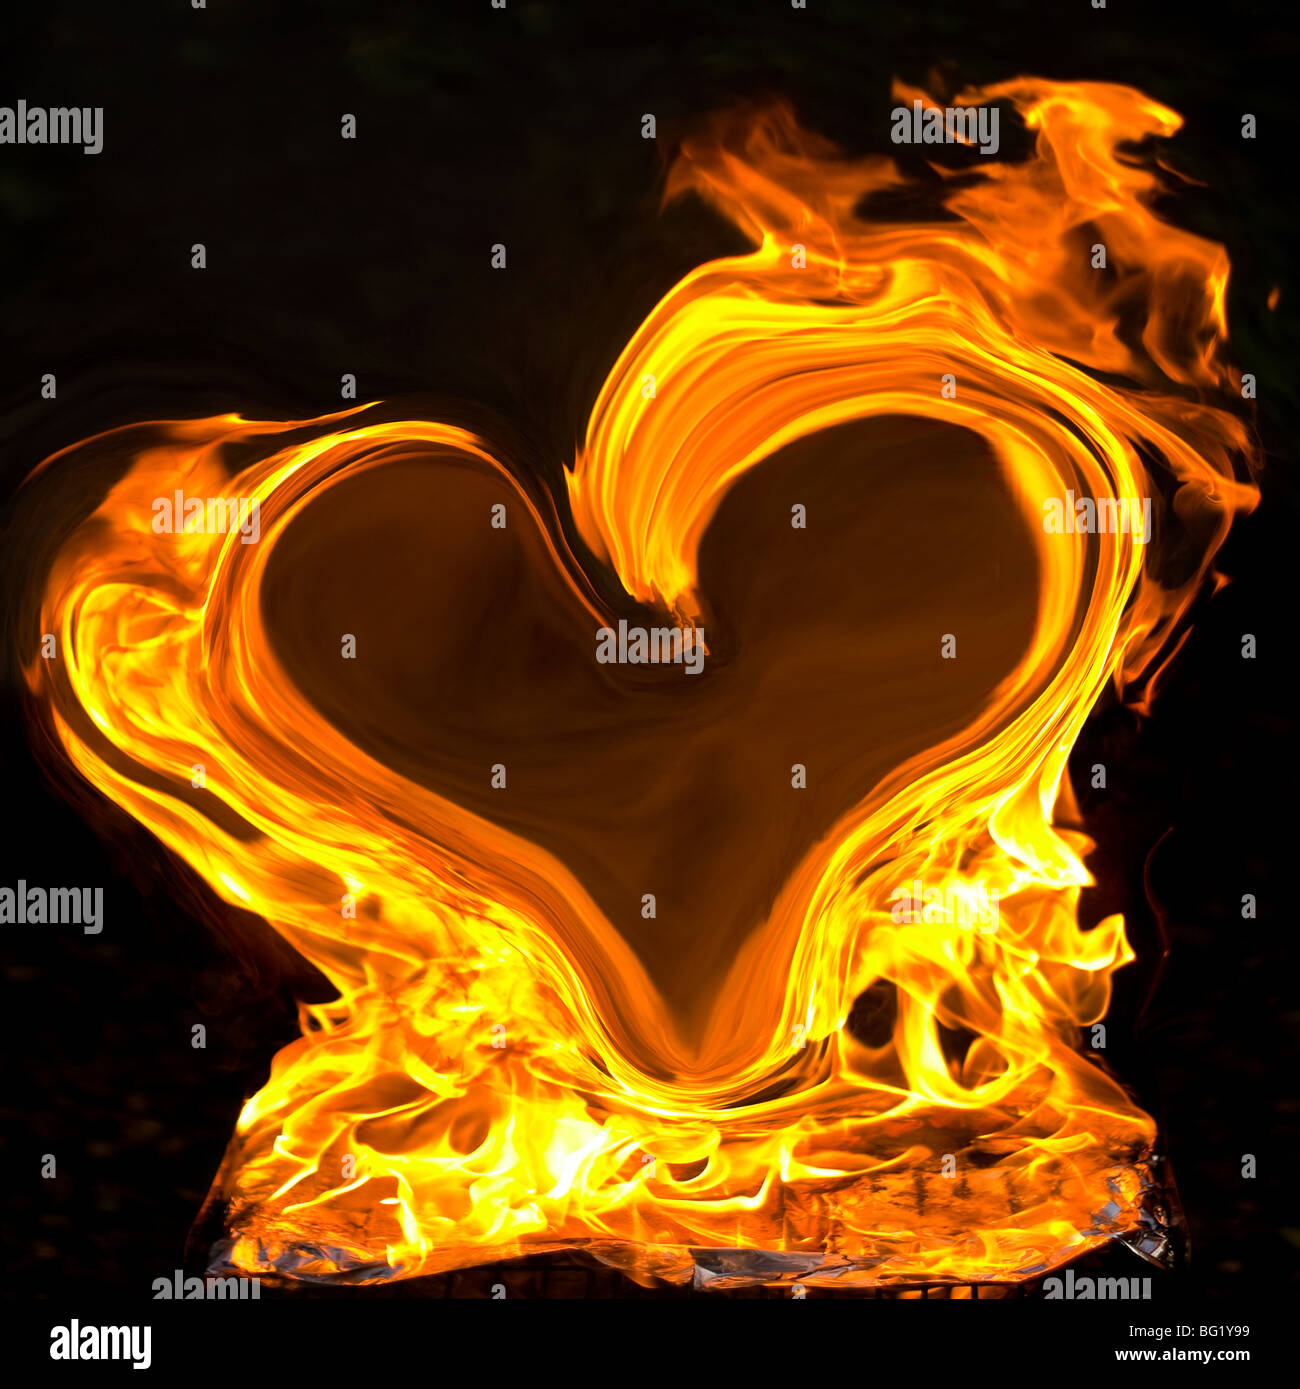 Les grandes flammes jaunes en forme de coeur sur fond noir Banque D'Images